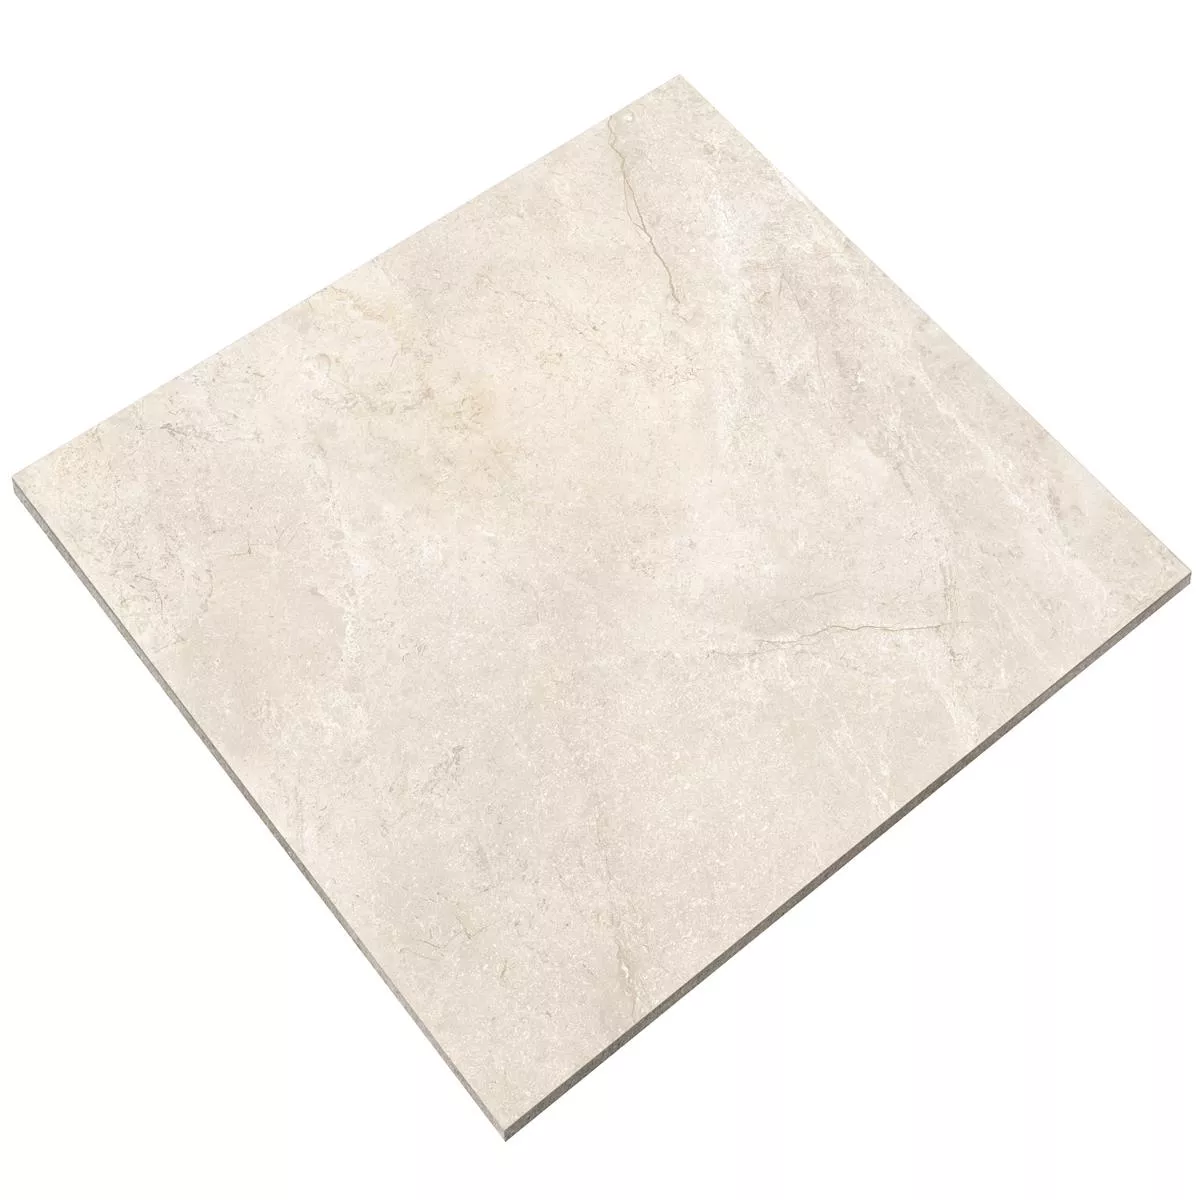 Πρότυπο από Πλακάκια Δαπέδου Pangea Μαρμάρινη Όψη Παγωμένος Cream 60x60cm